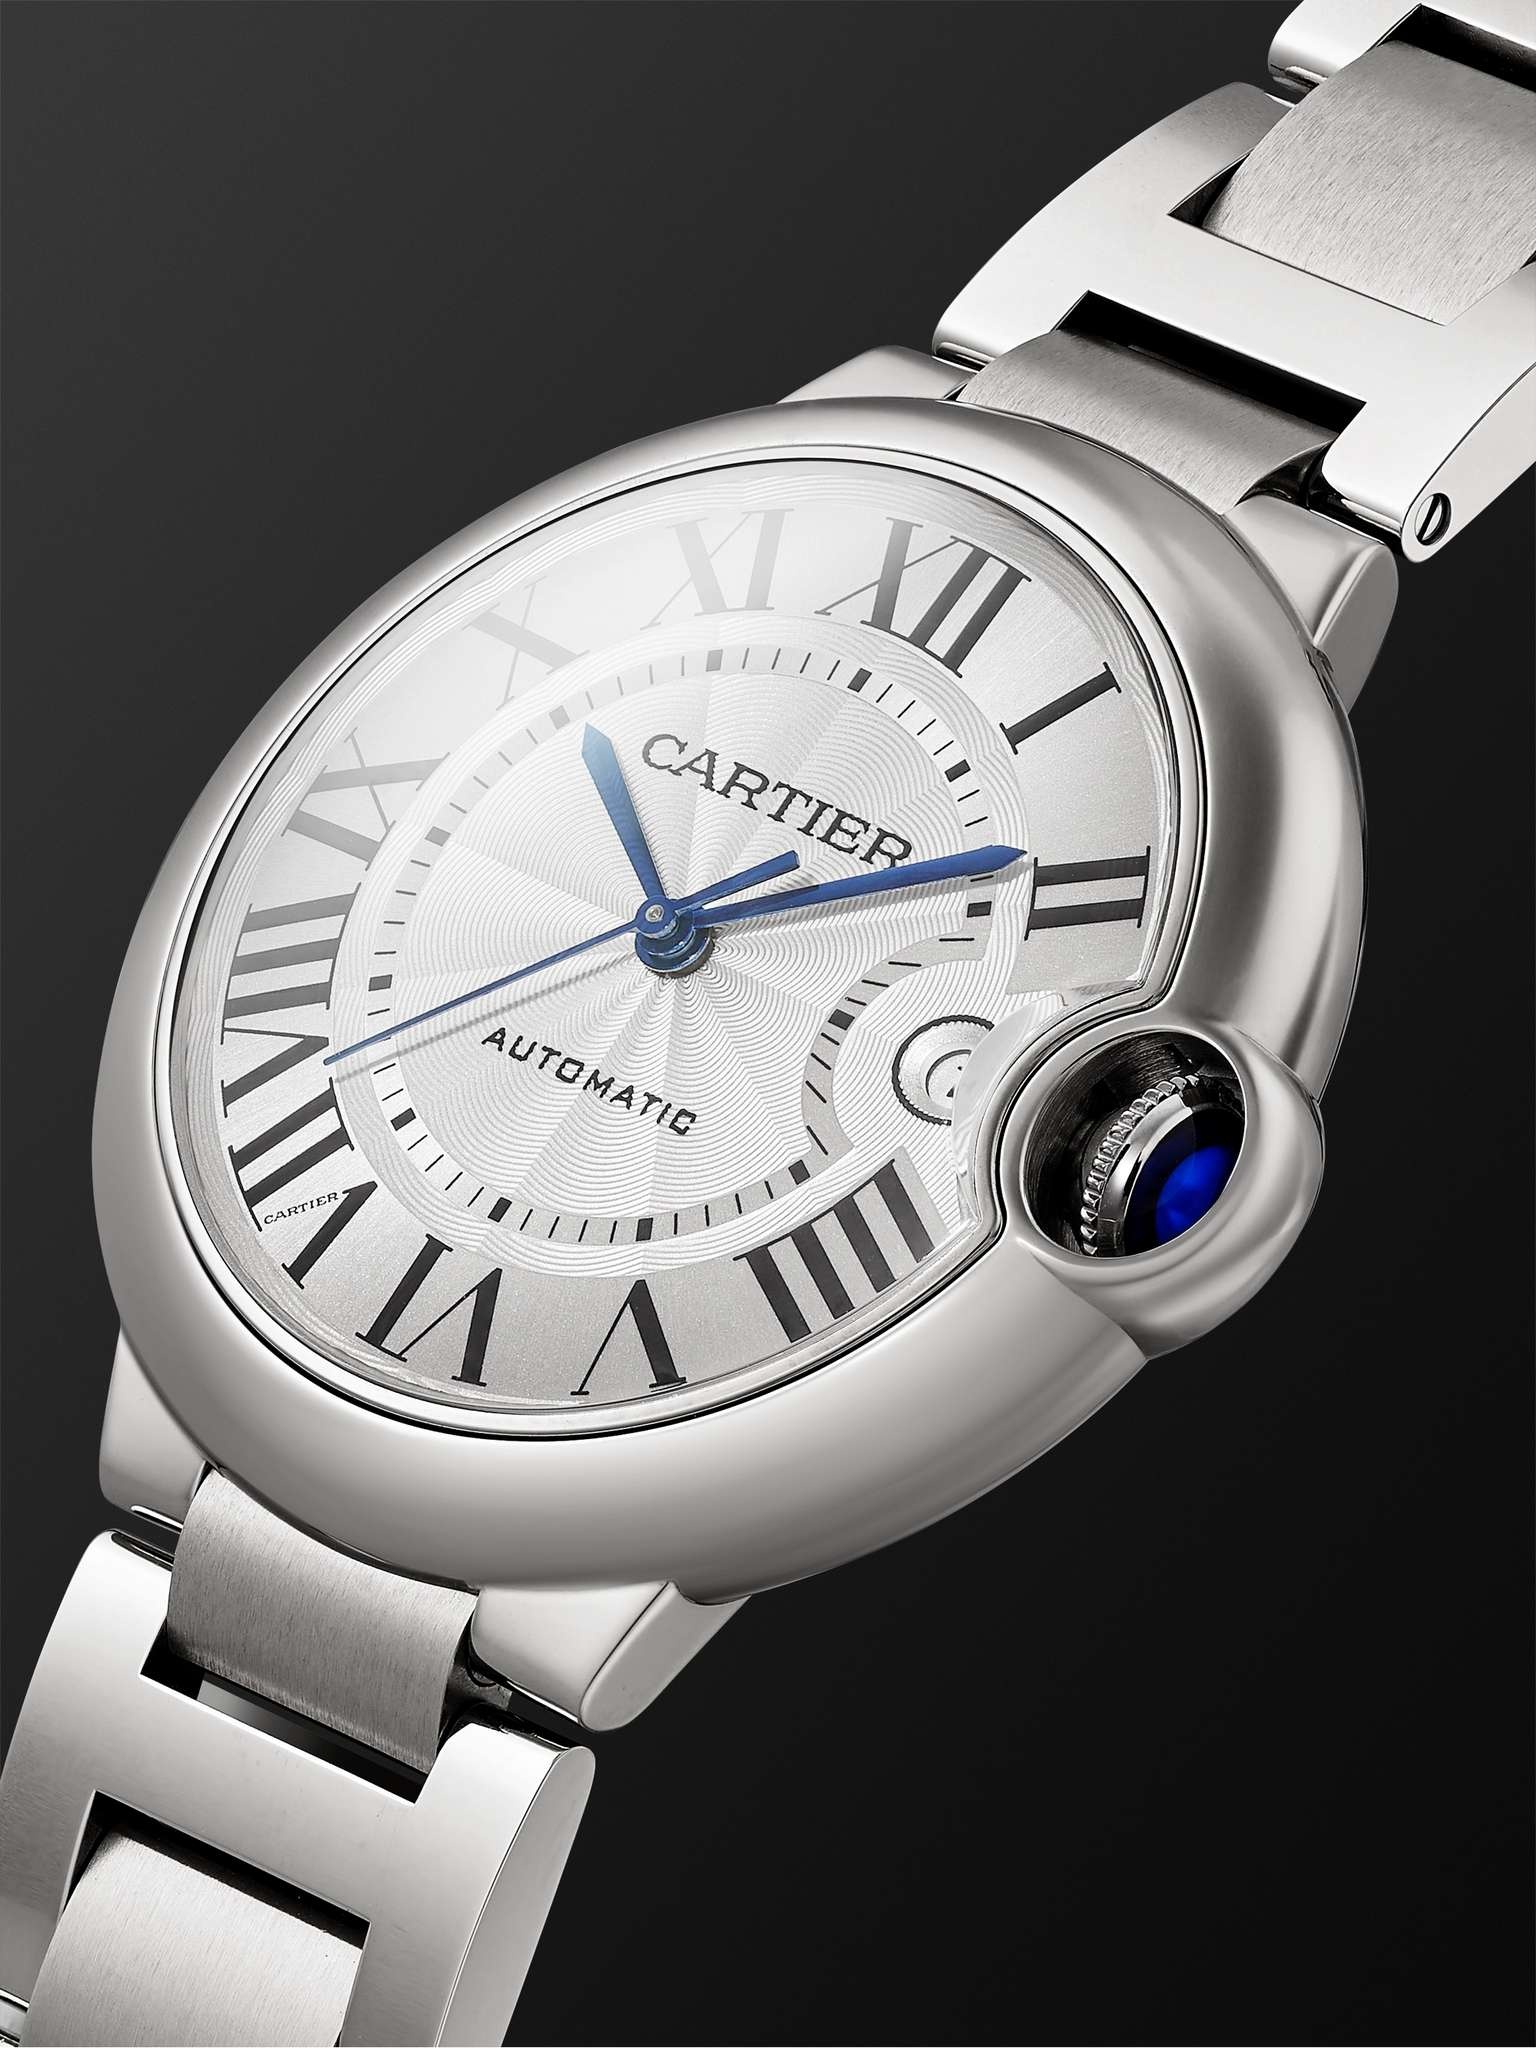 Ballon Bleu de Cartier Automatic 40mm Stainless Steel Watch, Ref. No. WSBB0040 - 3